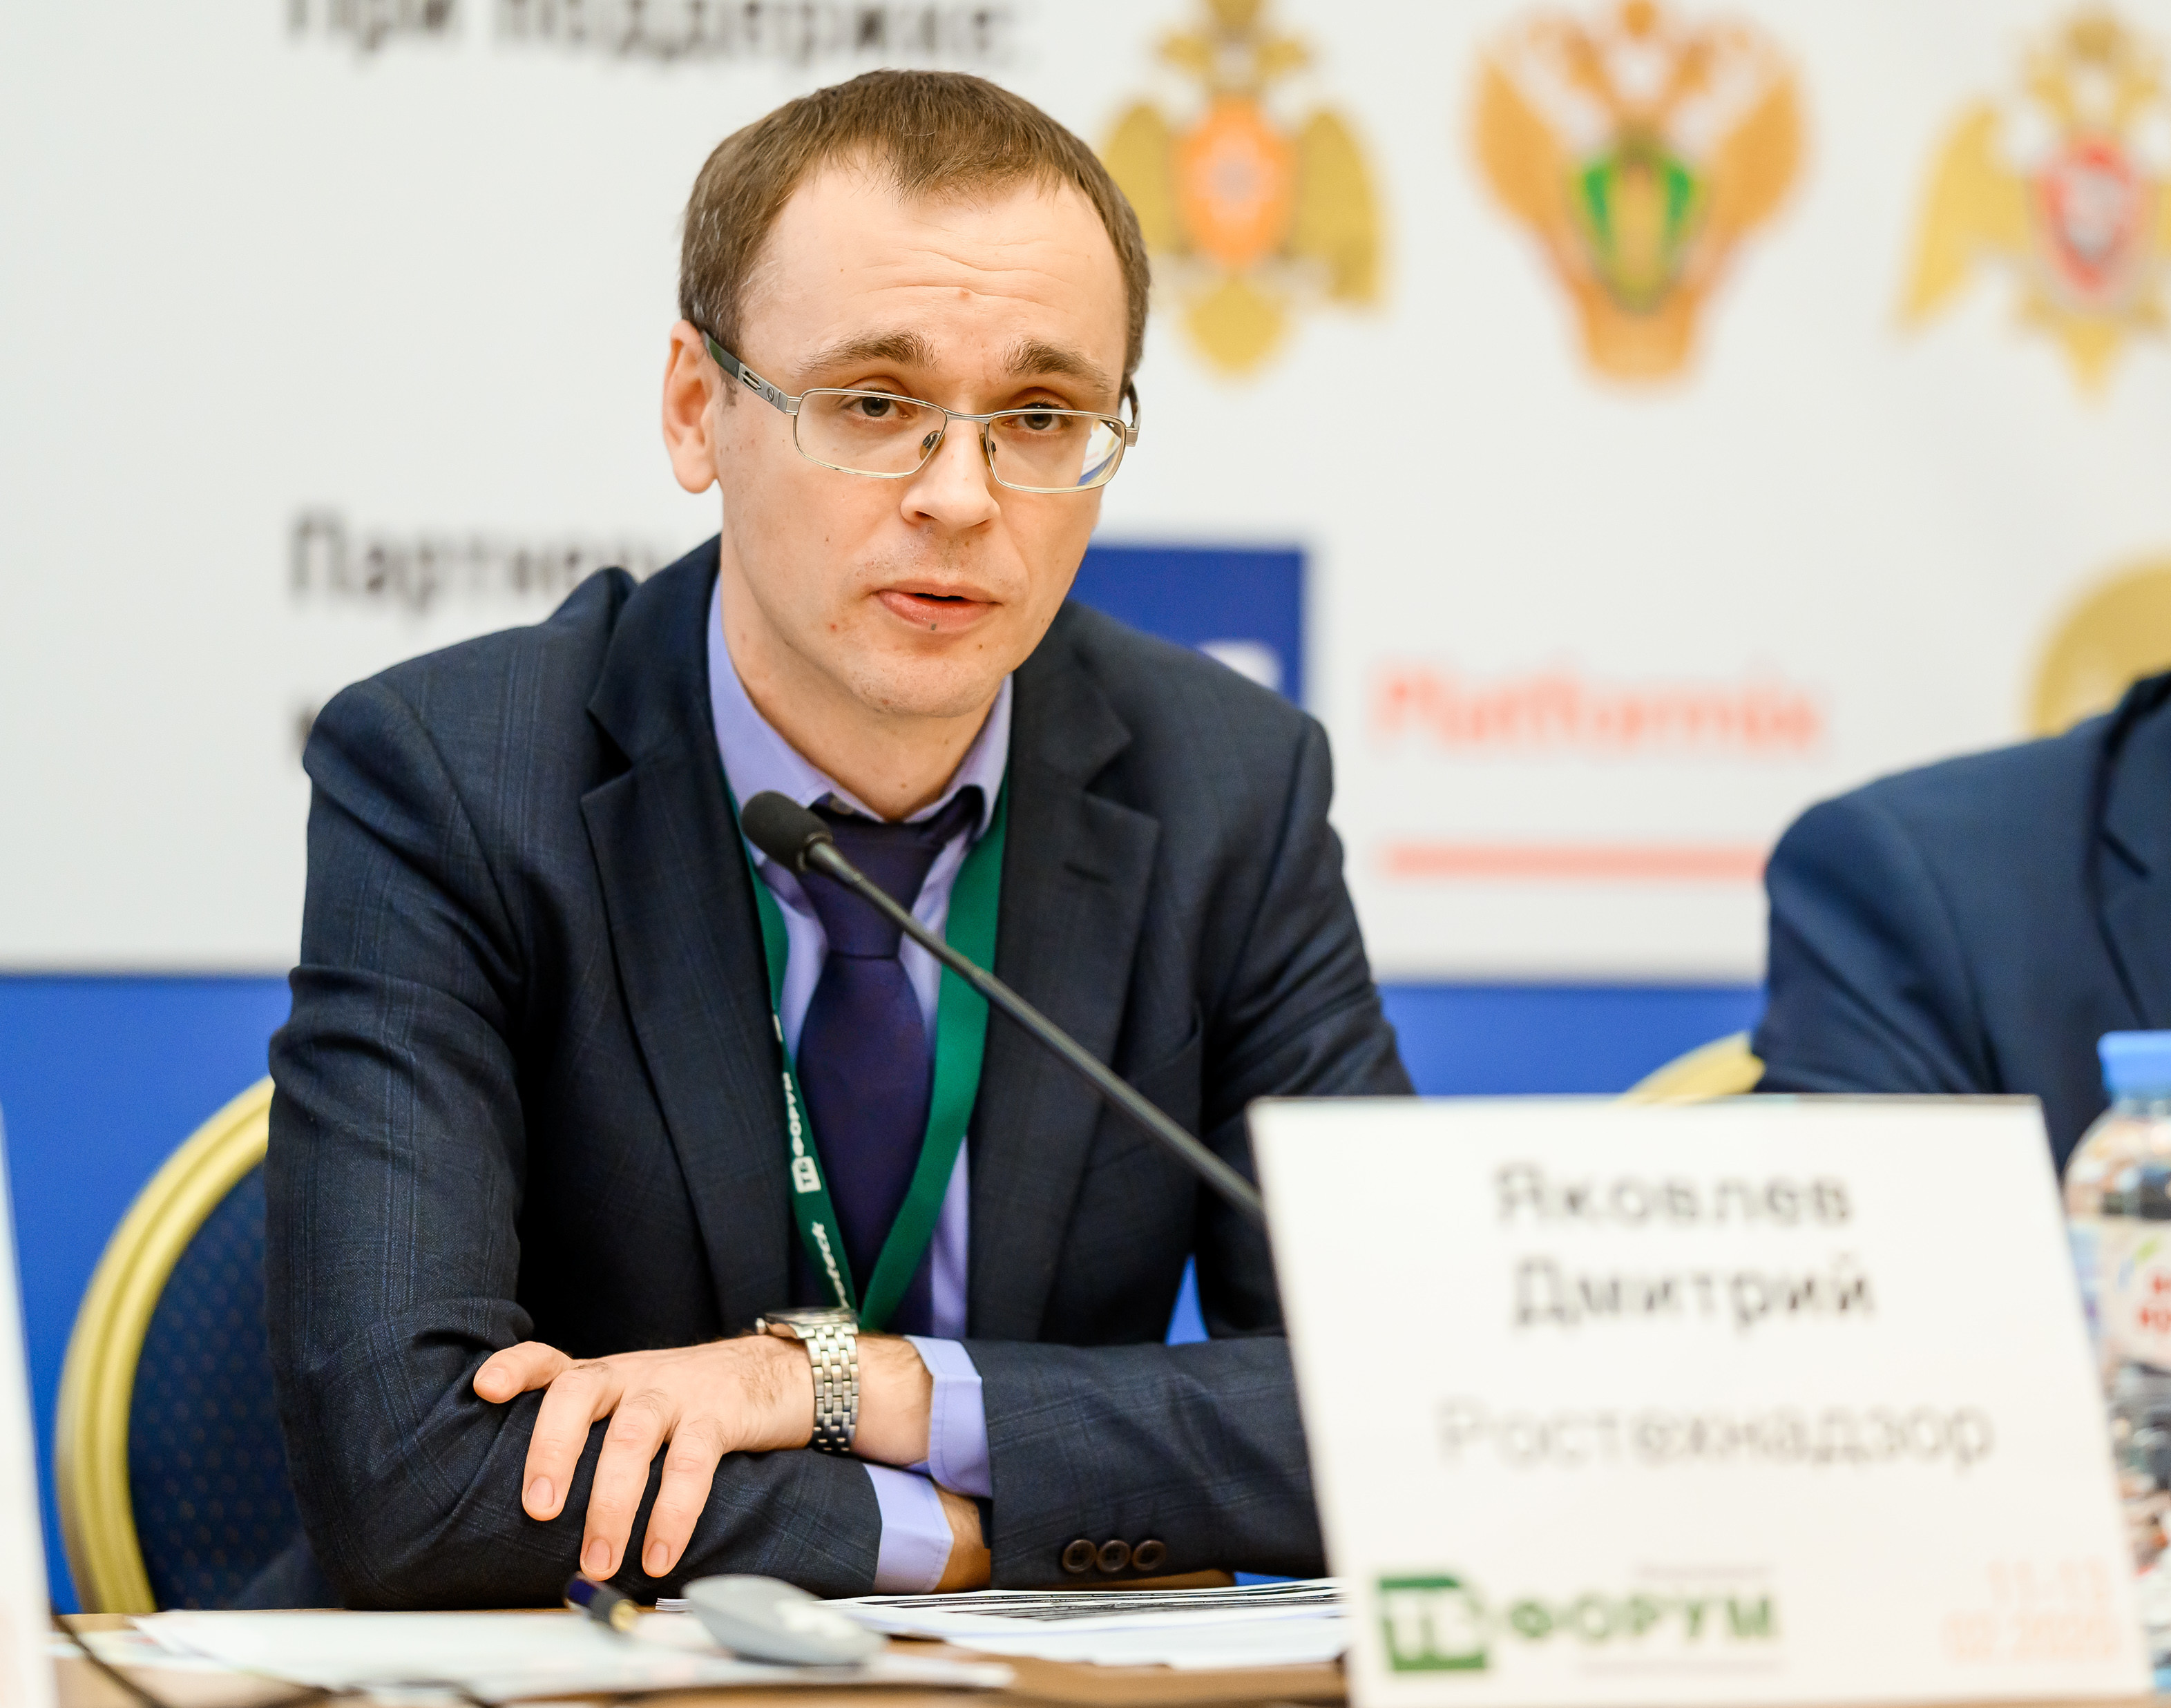 Дмитрий Яковлев (Ростехнадзор): наши регулярные встречи на ТБ Форуме необходимы